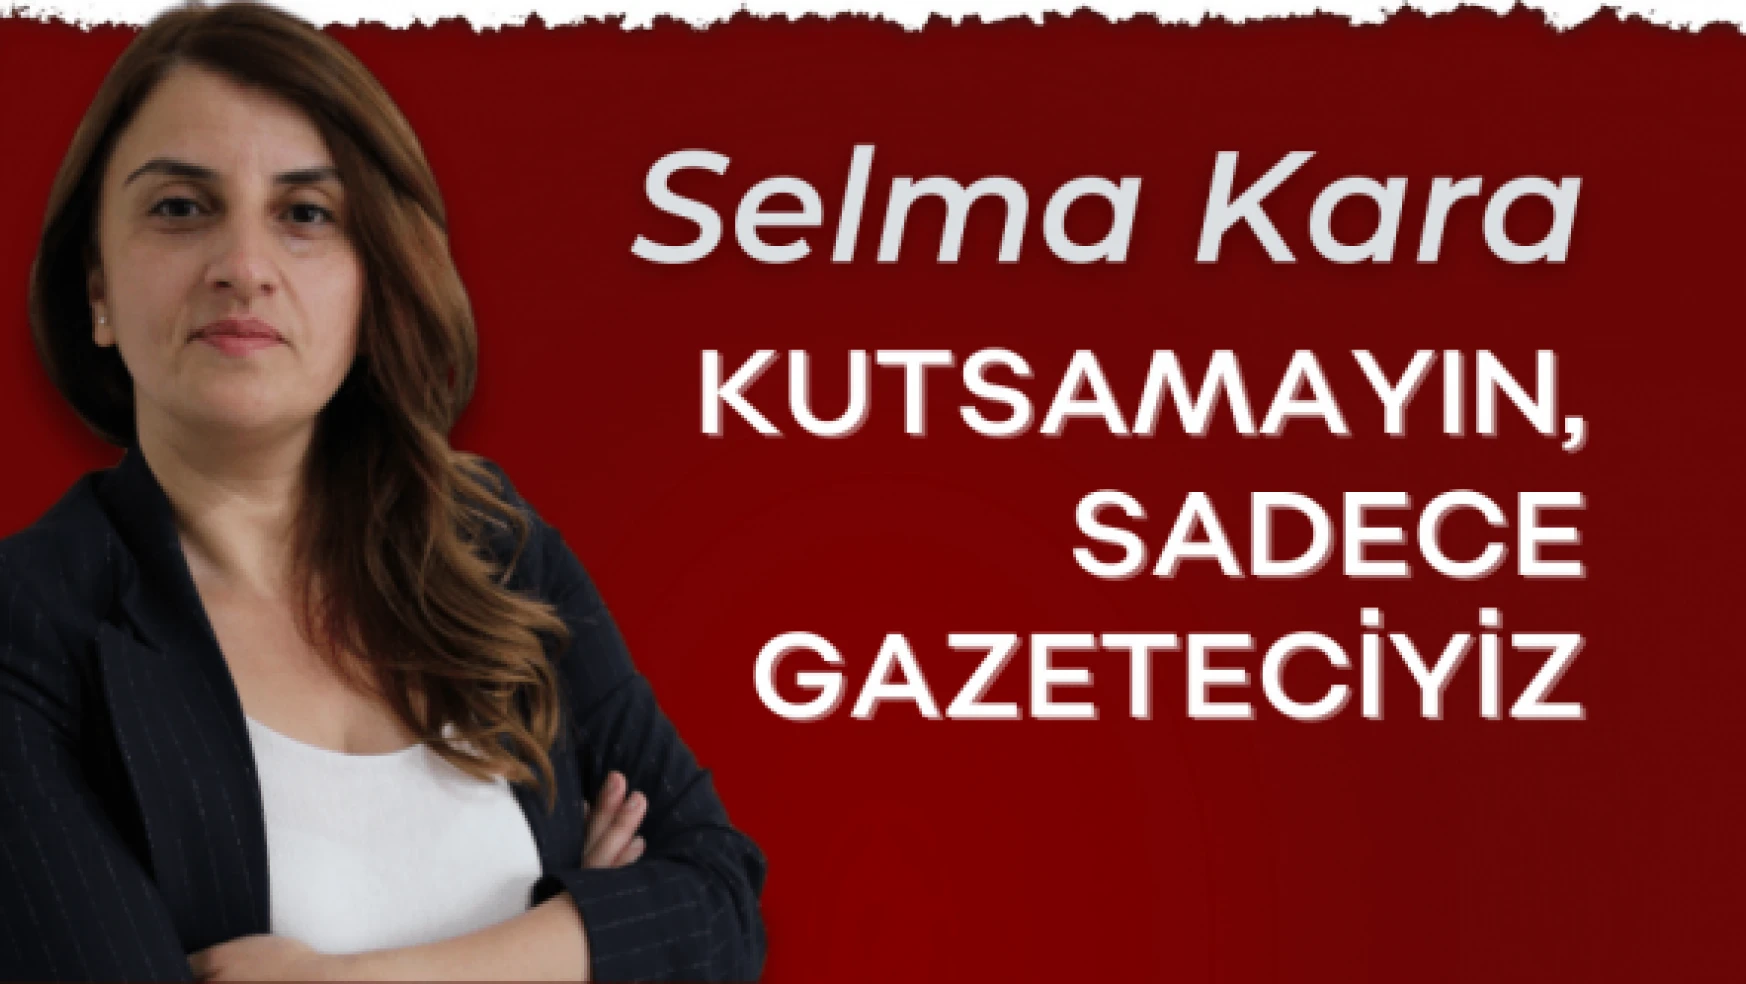 Gazeteci Selma Kara yazdı... &quotKutsamayın, sadece gazeteciyiz"